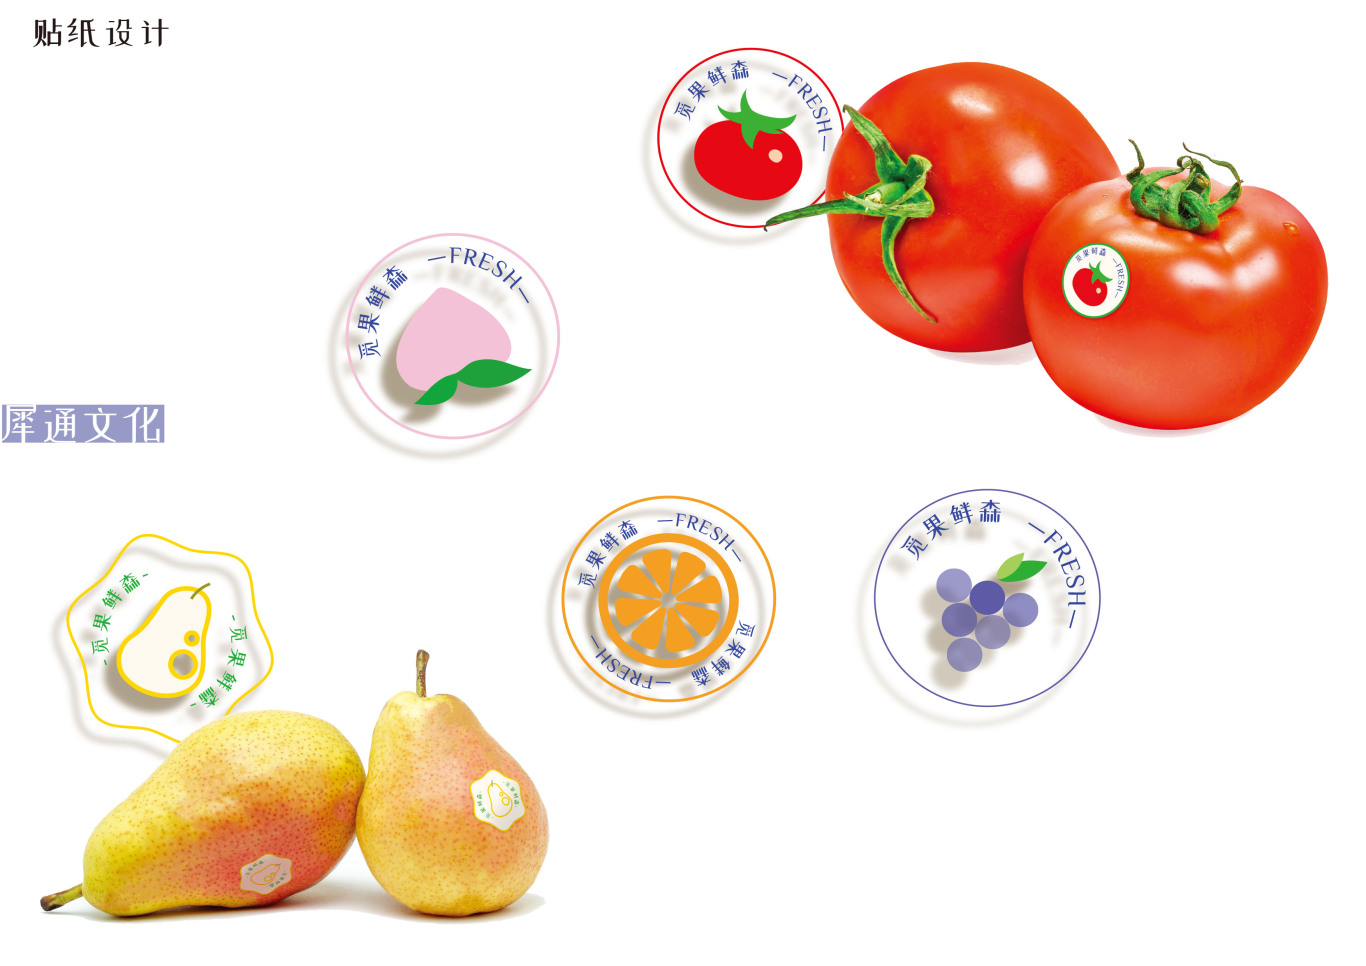 水果店logo与字体以及其他物料的设计图14